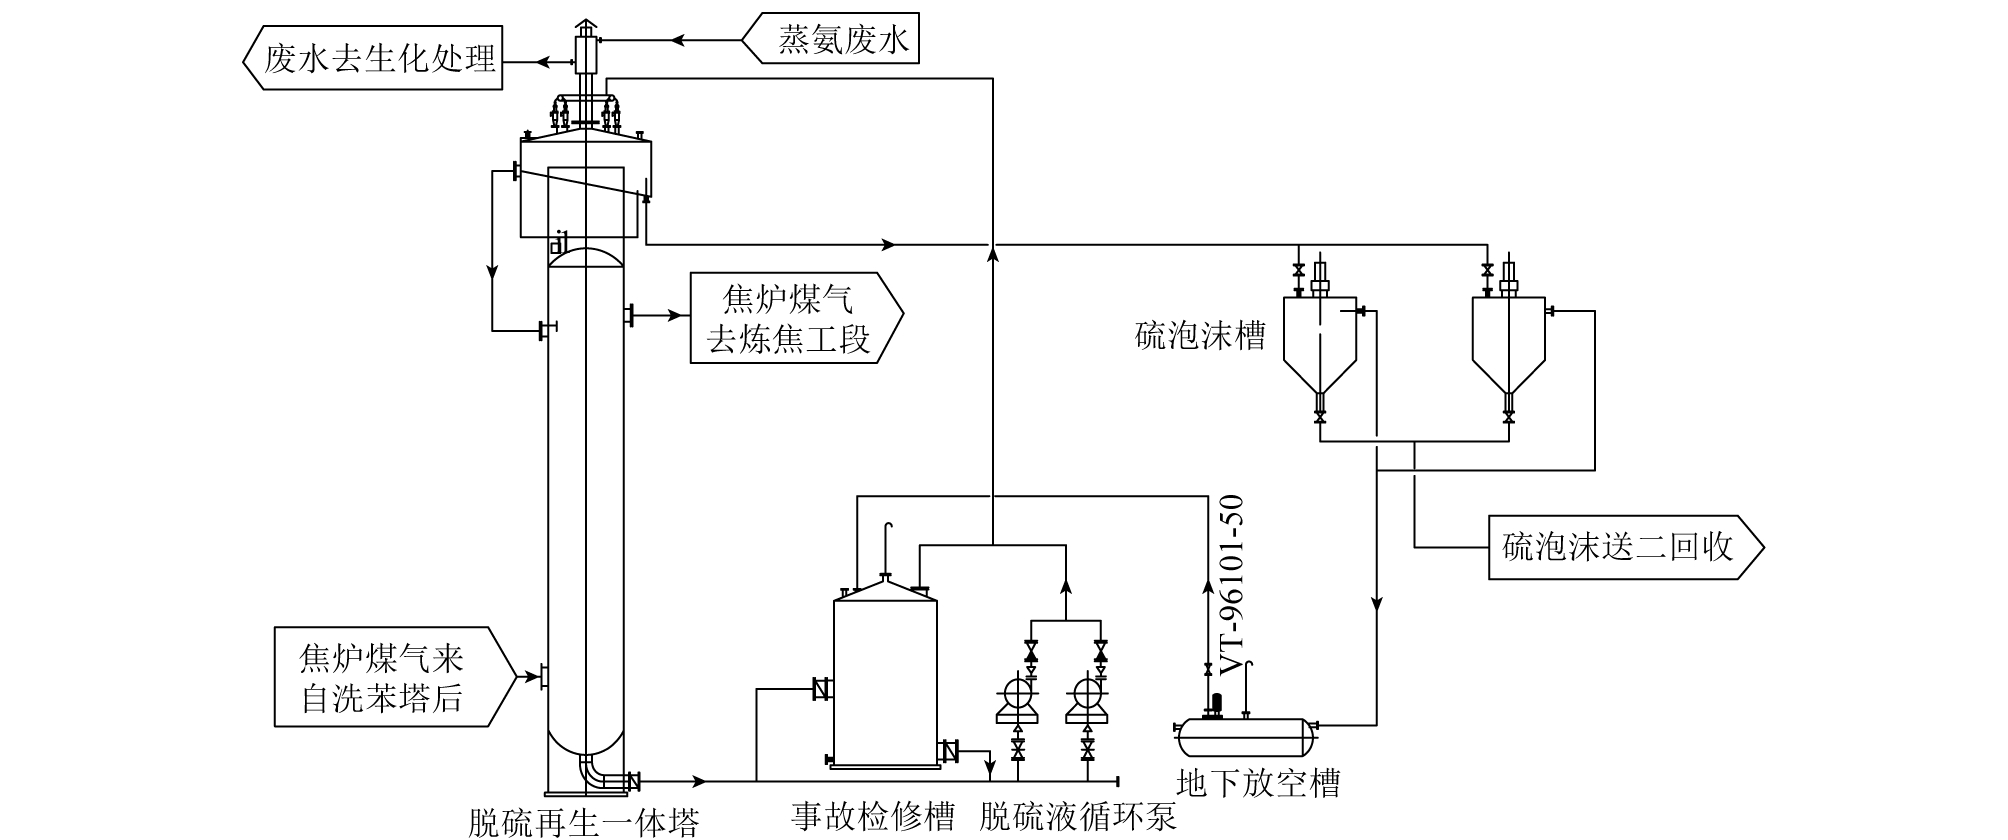 焦炉煤气一塔式脱硫技术研究及应用